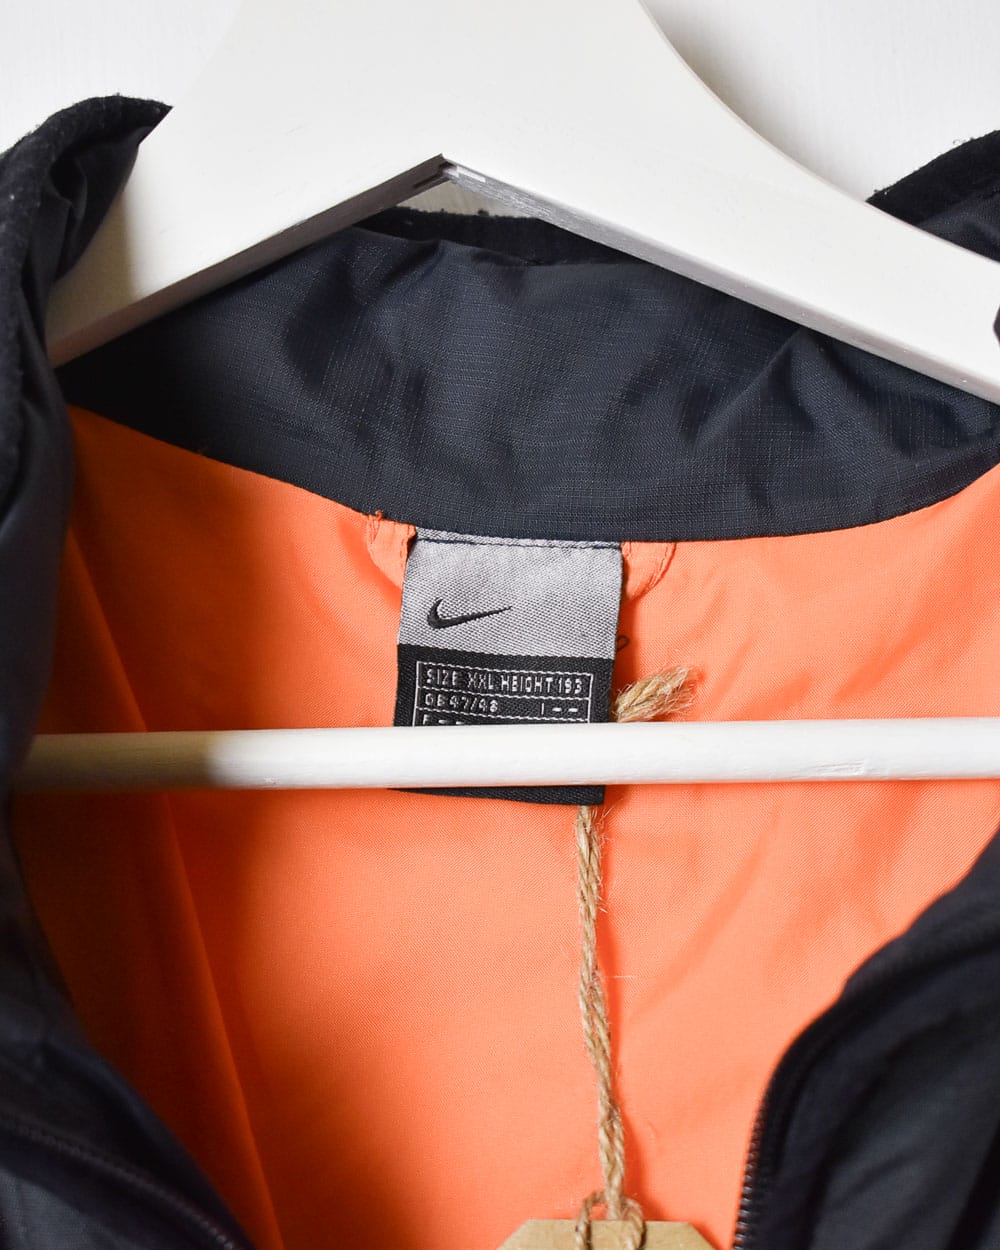 Orange Nike Puffer Jacket - XX-Large